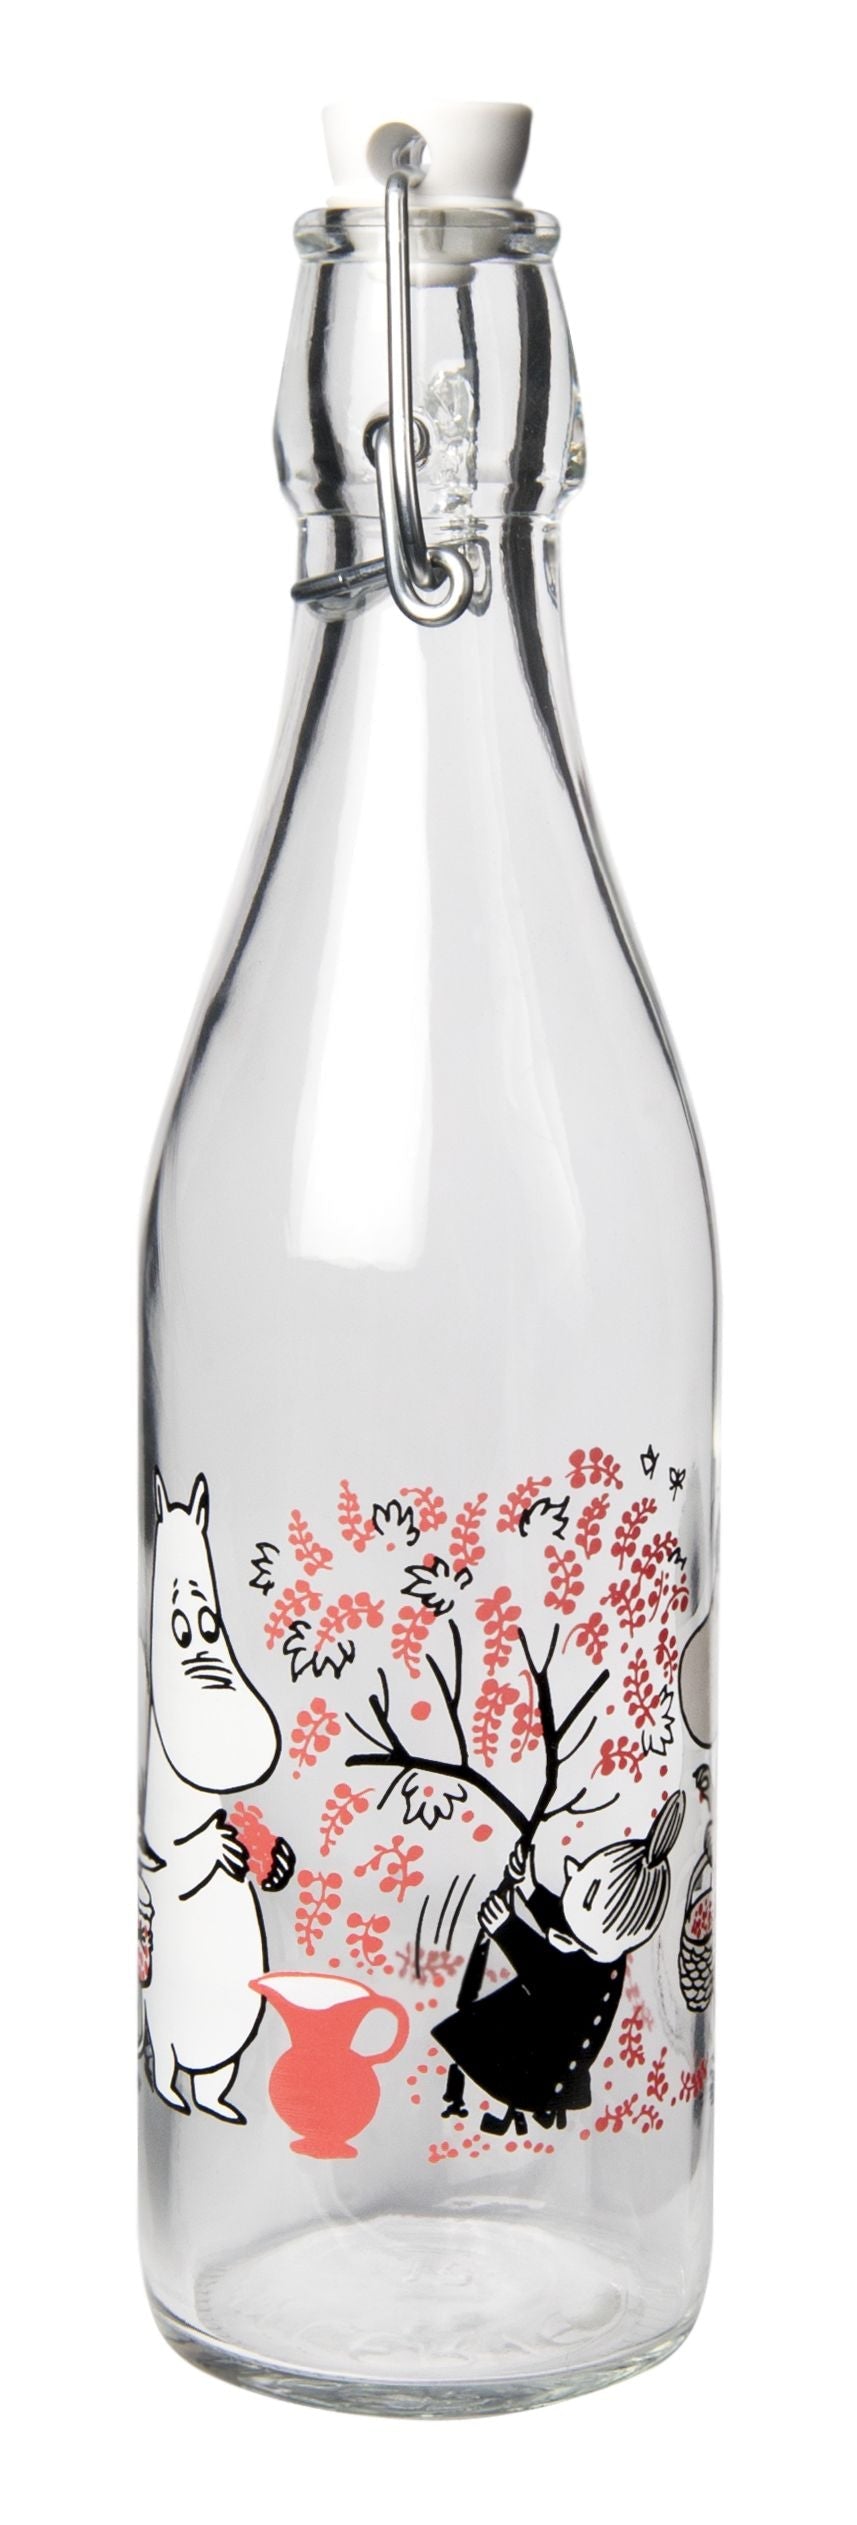 Muurla Moomin glasflaske, bær